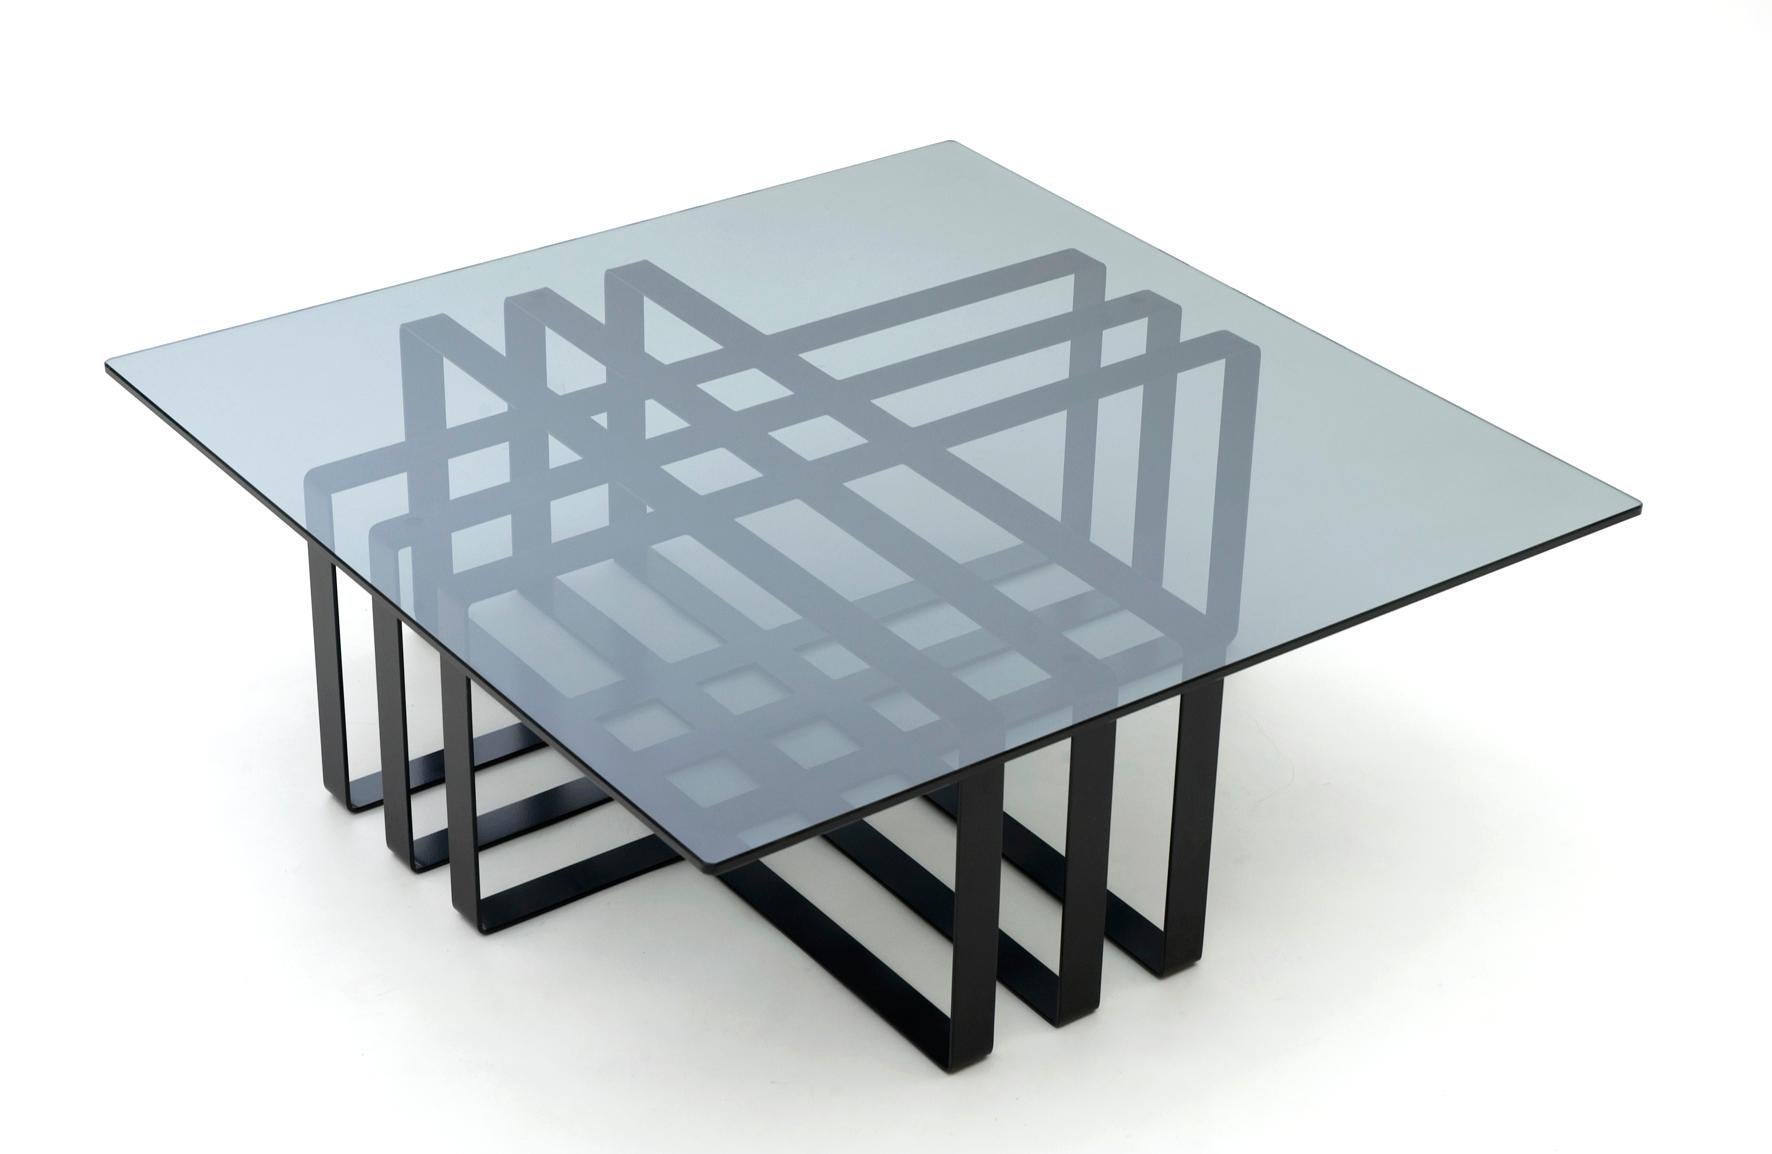 La table basse Ramen présente un cadre asymétrique qui crée un point focal dans tout espace de vie. L'extraordinaire qualité de l'artisanat assure une finition sans faille, comme si le cadre était taillé dans une pièce massive. La table introduit